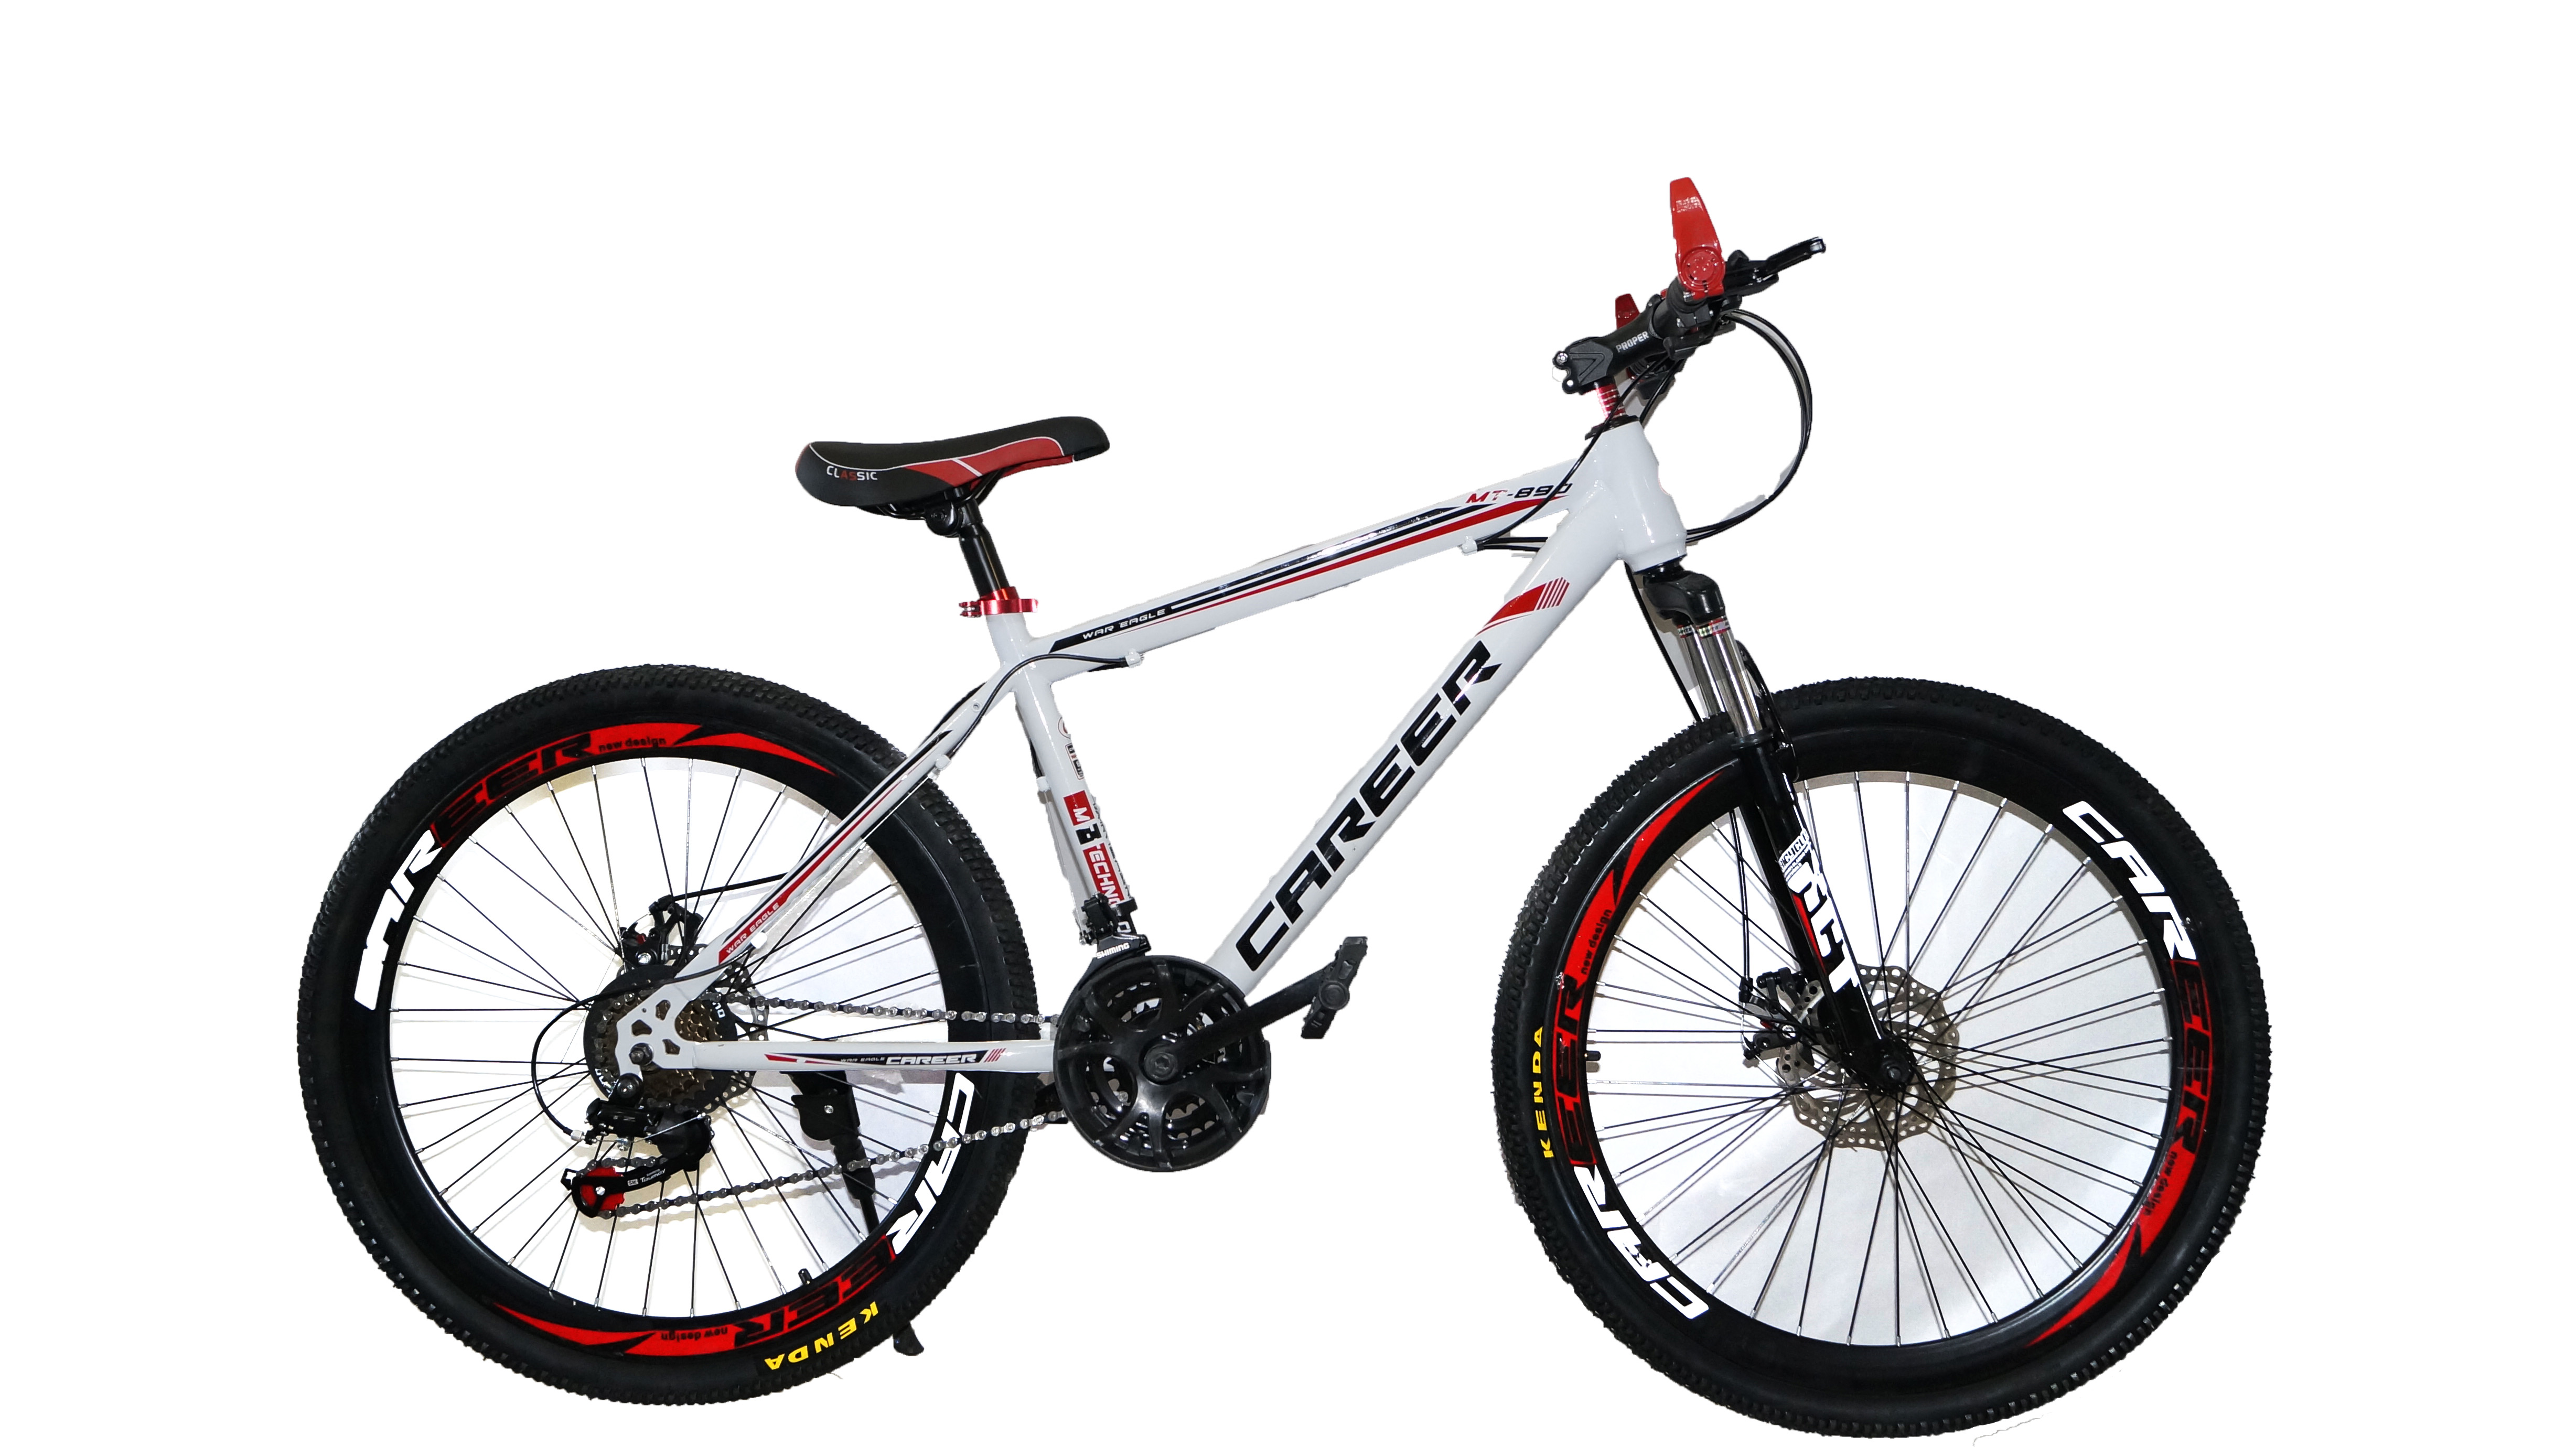 Велосипед купить фирмы. Велосипед Energy e01, 26 дюймов, 21 скорость, (черно-красный). Велосипед Dream c680. Велосипед career c680 характеристики. Велосипед Drive Dr-797.